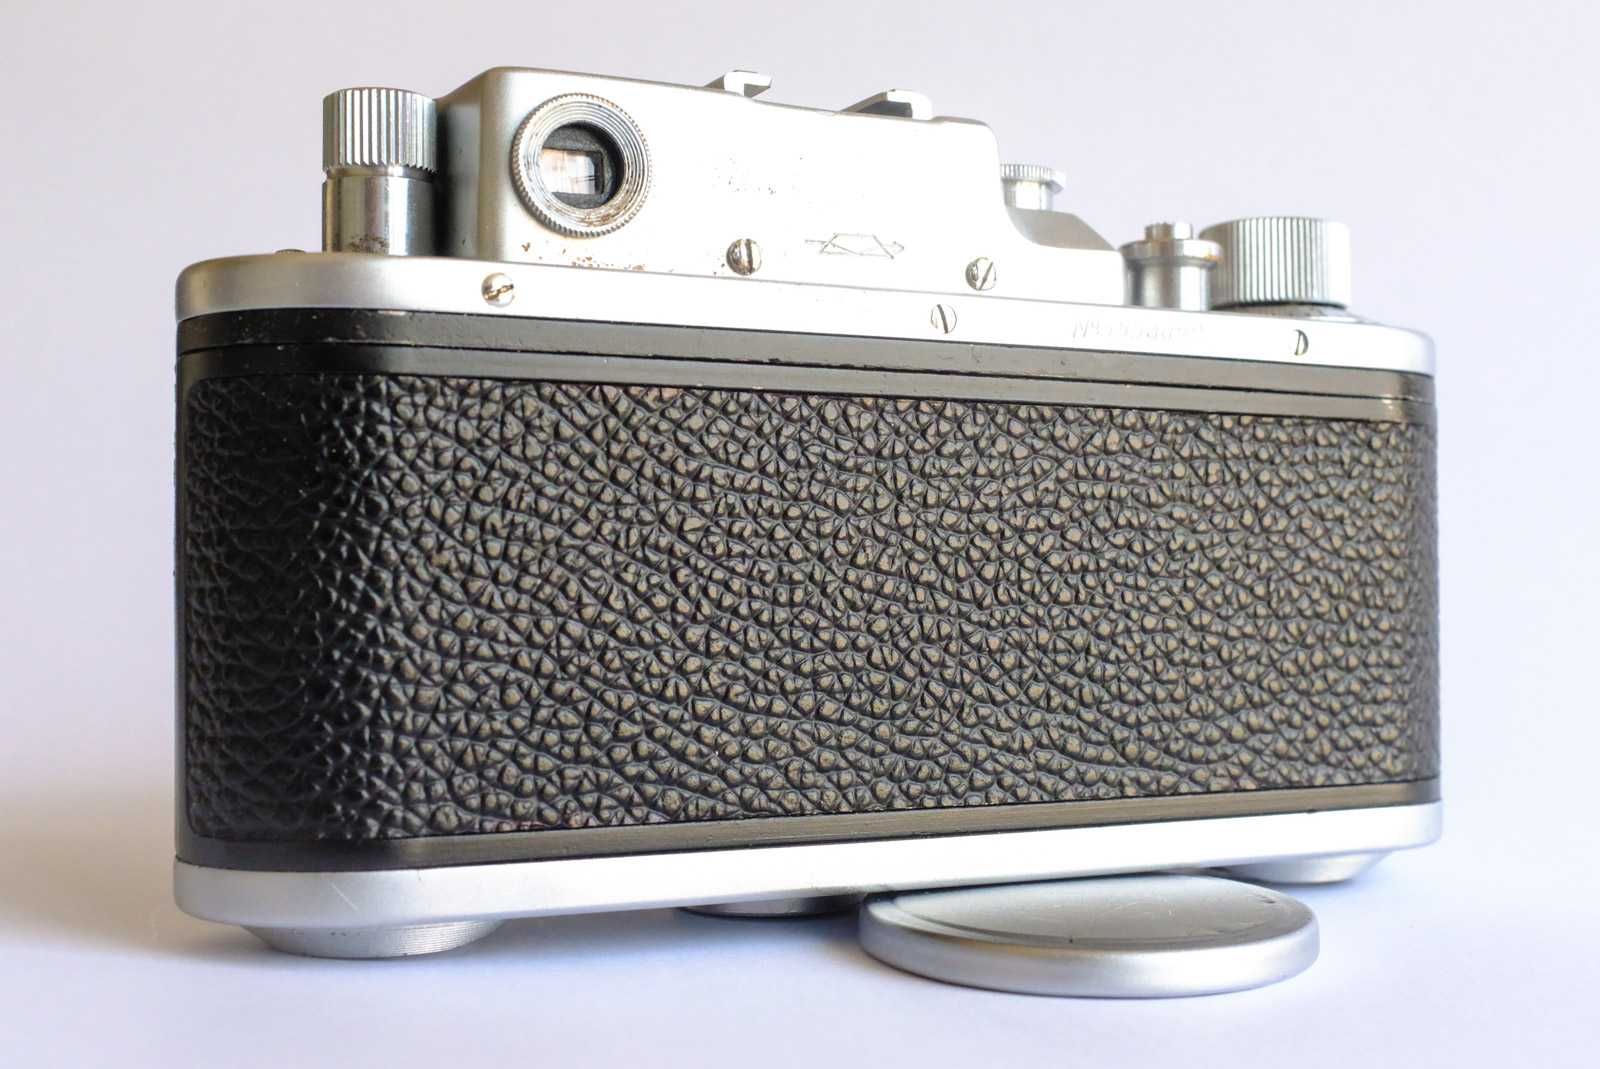 Aparat fotograficzny Zorki-3M po serwisie, przetestowany z filmem